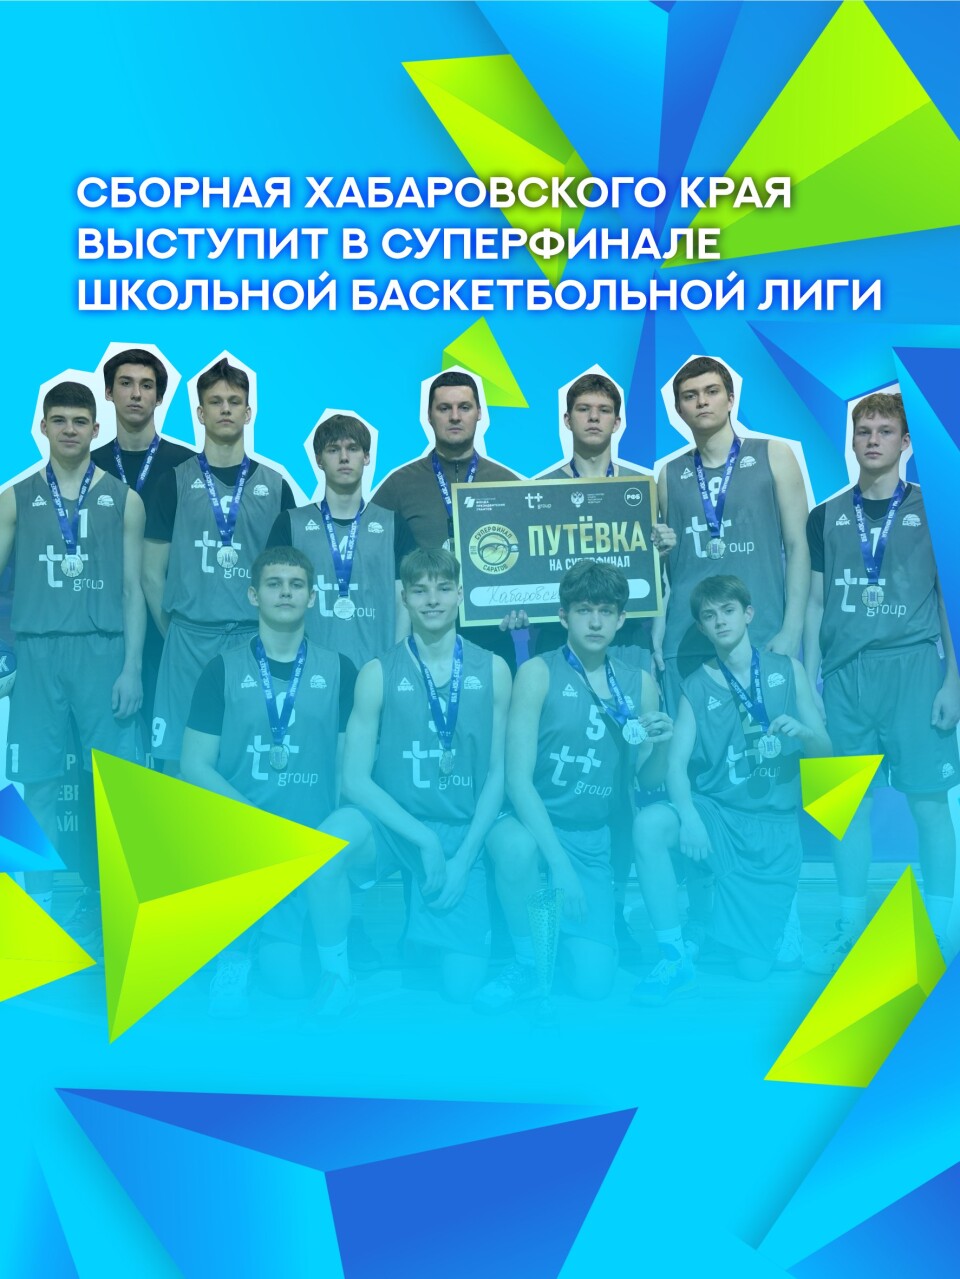 Команда юношей хабаровской школы № 30 заняла 2 место в дальневосточном отборе соревнований «КЭС-БАСКЕТ»